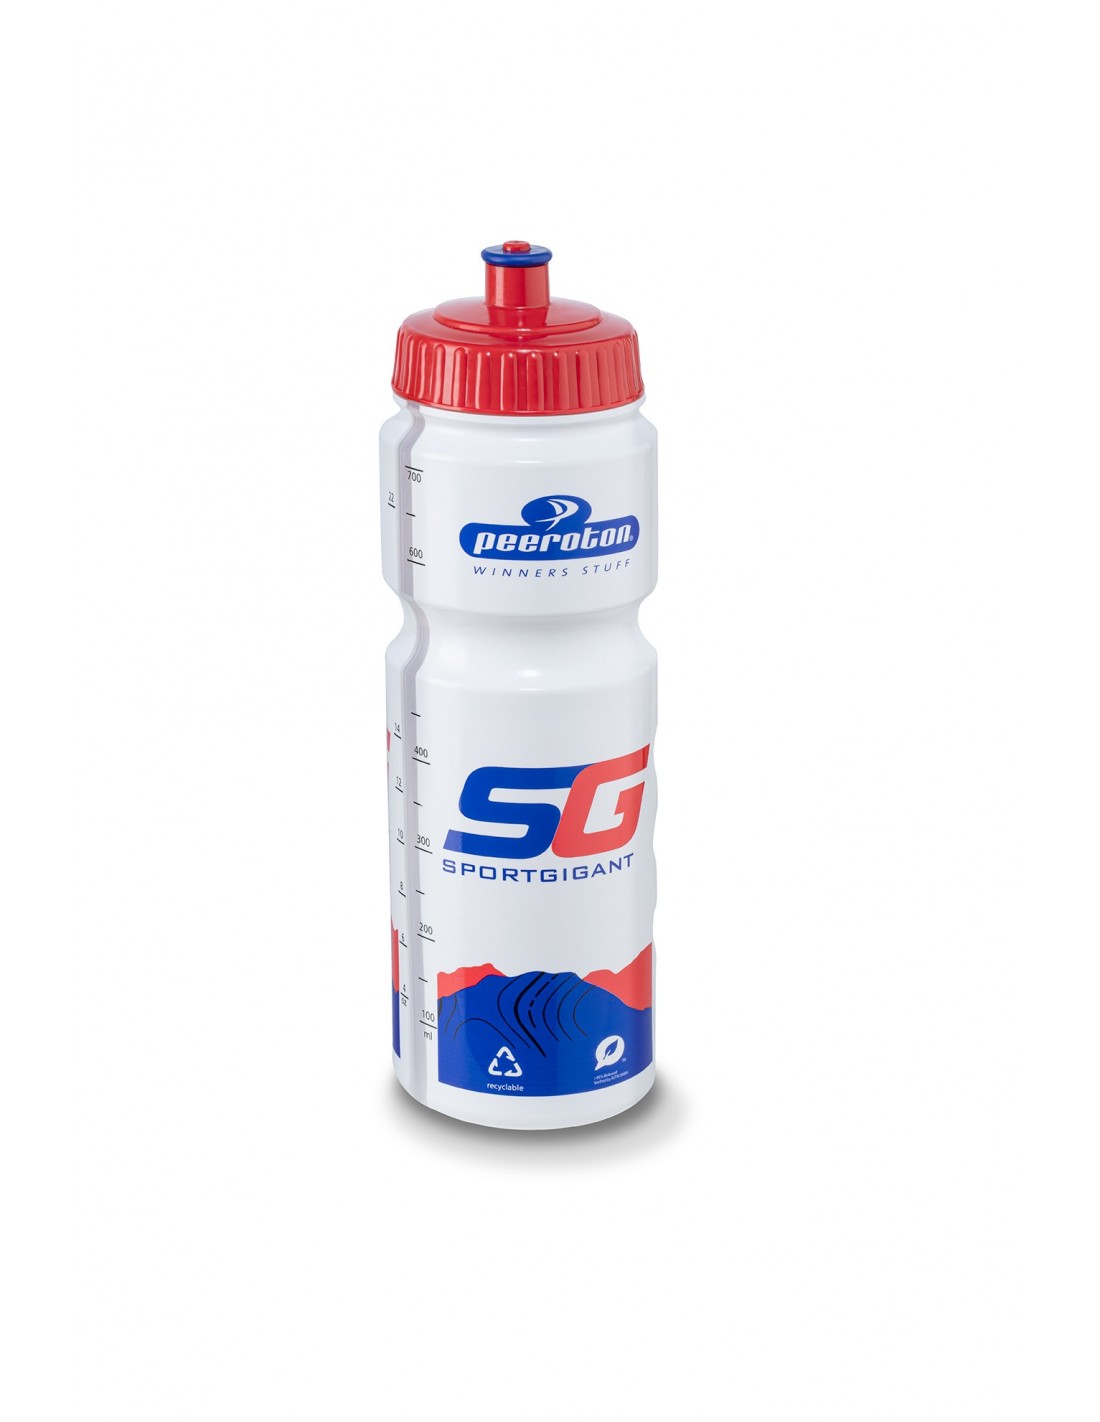 Sportgigant Trinkflasche Special Edition, mit rotem Deckel, 750ml Trinkflaschenvolumen - 0,75 Liter, von Sportgigant